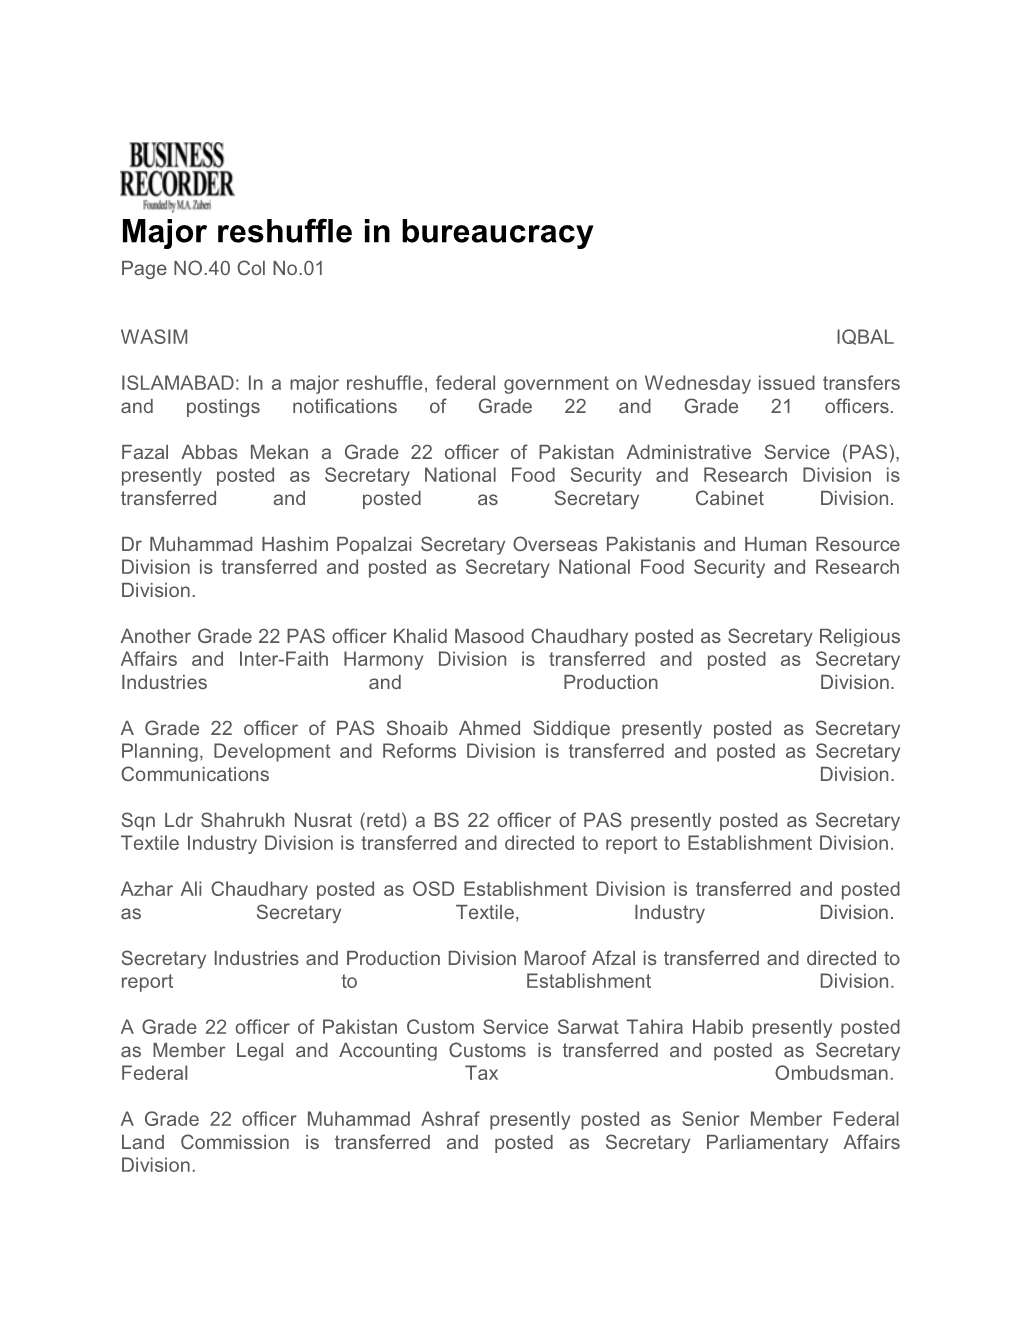 Major Reshuffle in Bureaucracy Page NO.40 Col No.01